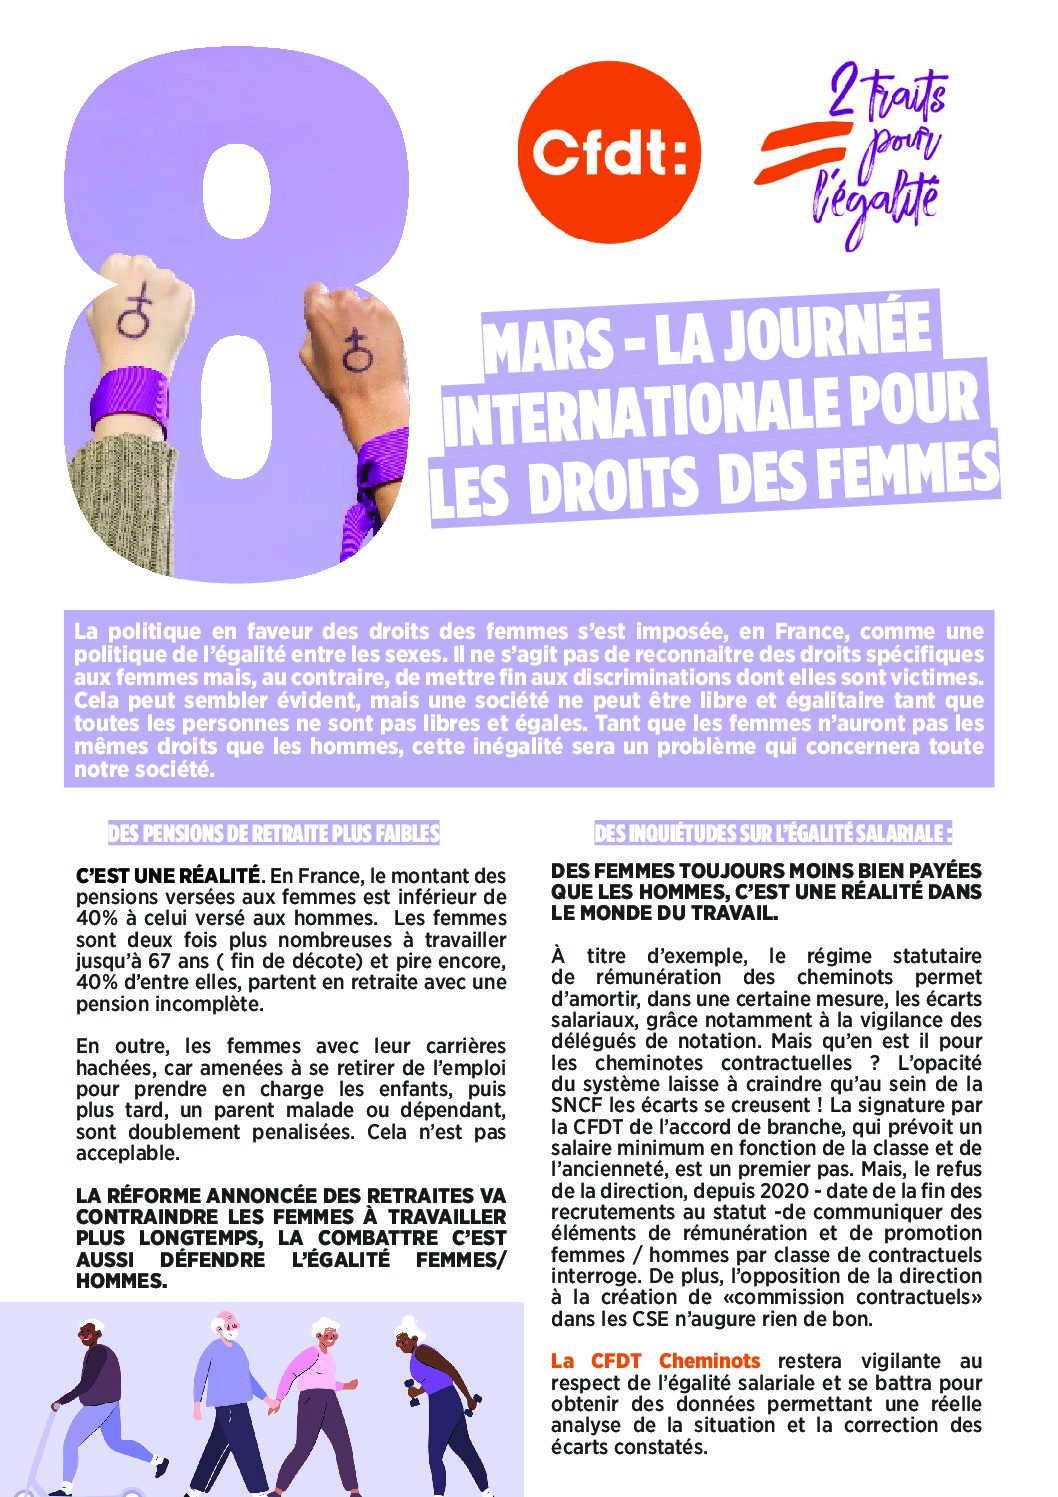 8 Mars – la journée internationale pour les droits des femmes